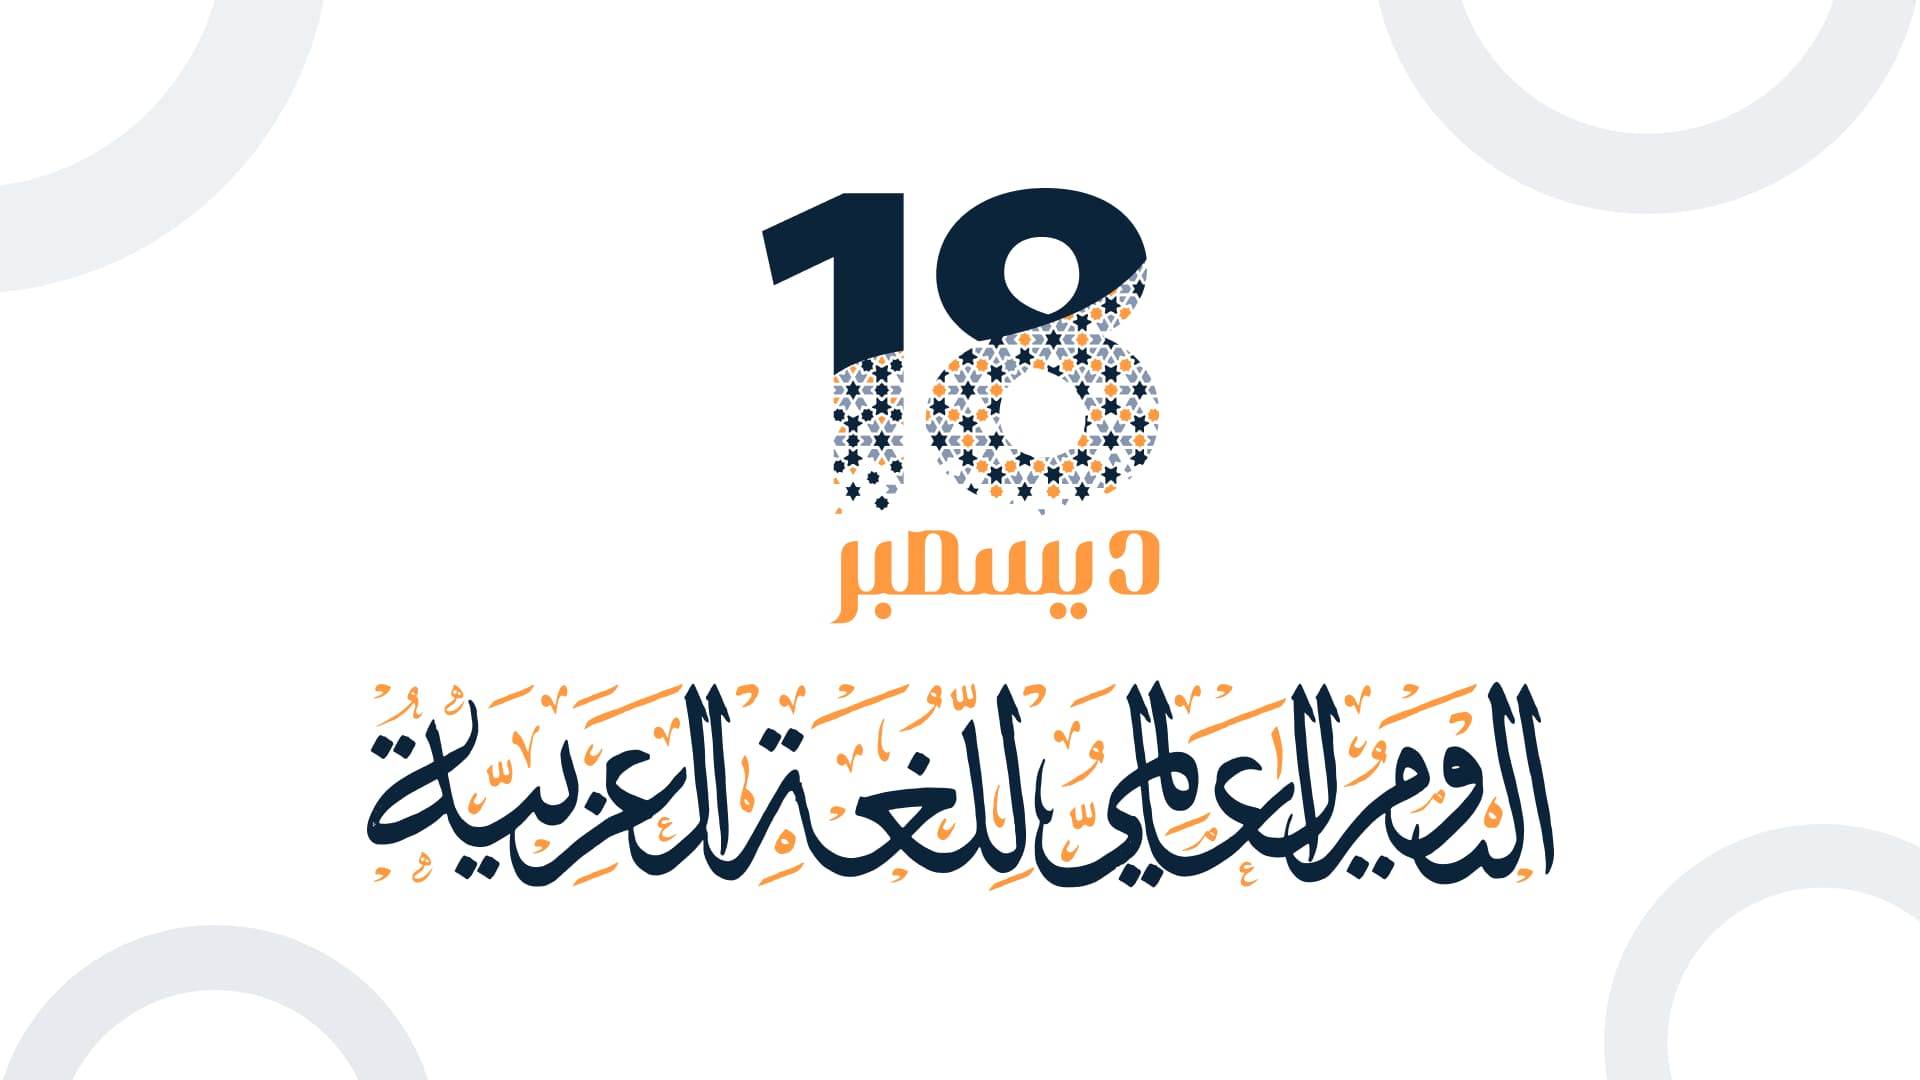 اليوم العالمي للغة العربية، ودور أفضل التحليلات في إثراء المحتوى العربي